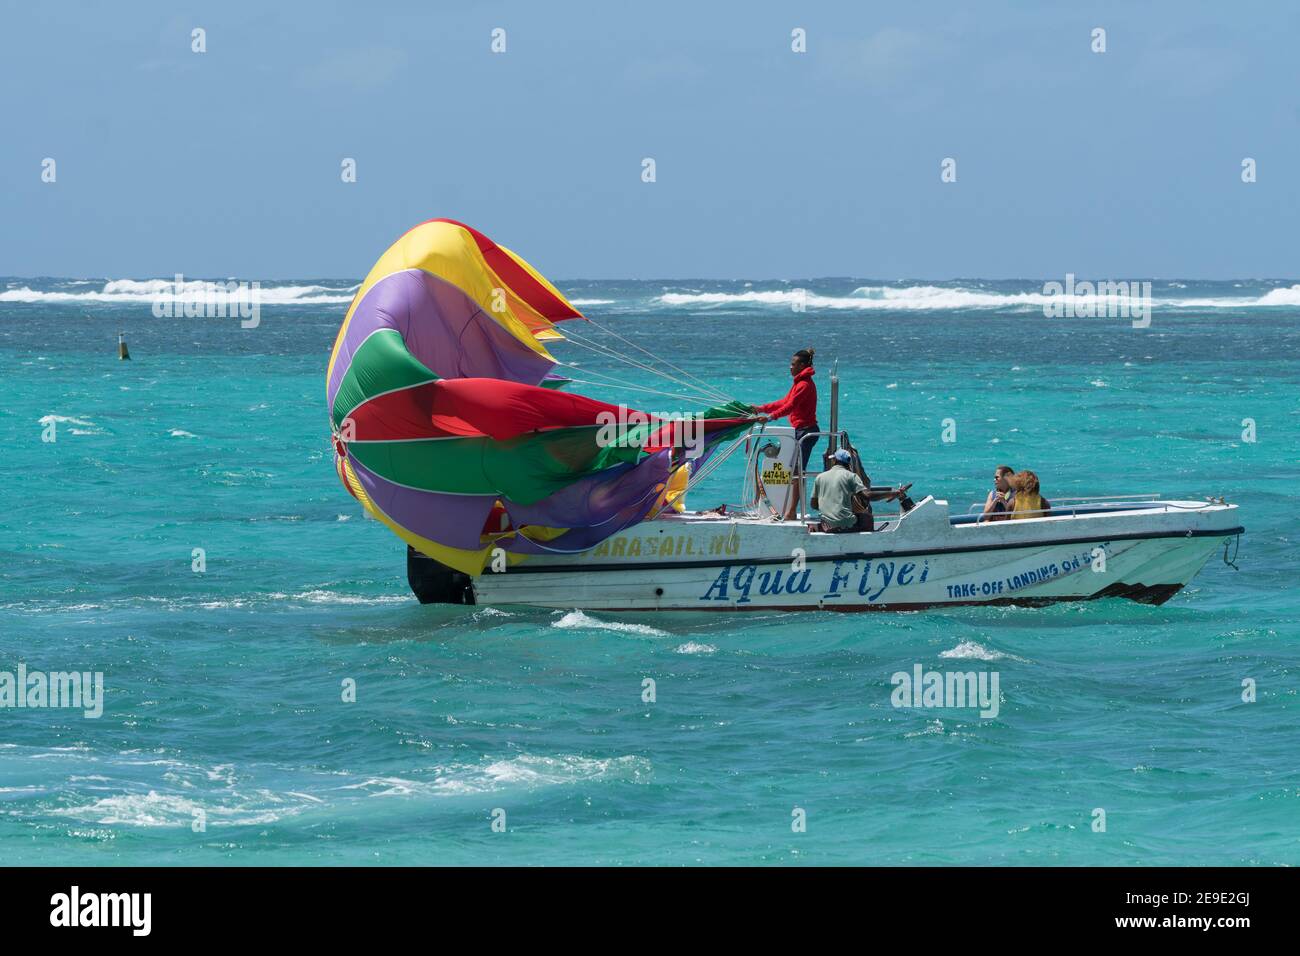 Bateau de parachute ascensionnel avec parachute relâché pour une voile sur Eau de mer bleu turquoise à l'île Maurice et les gens à bord Banque D'Images